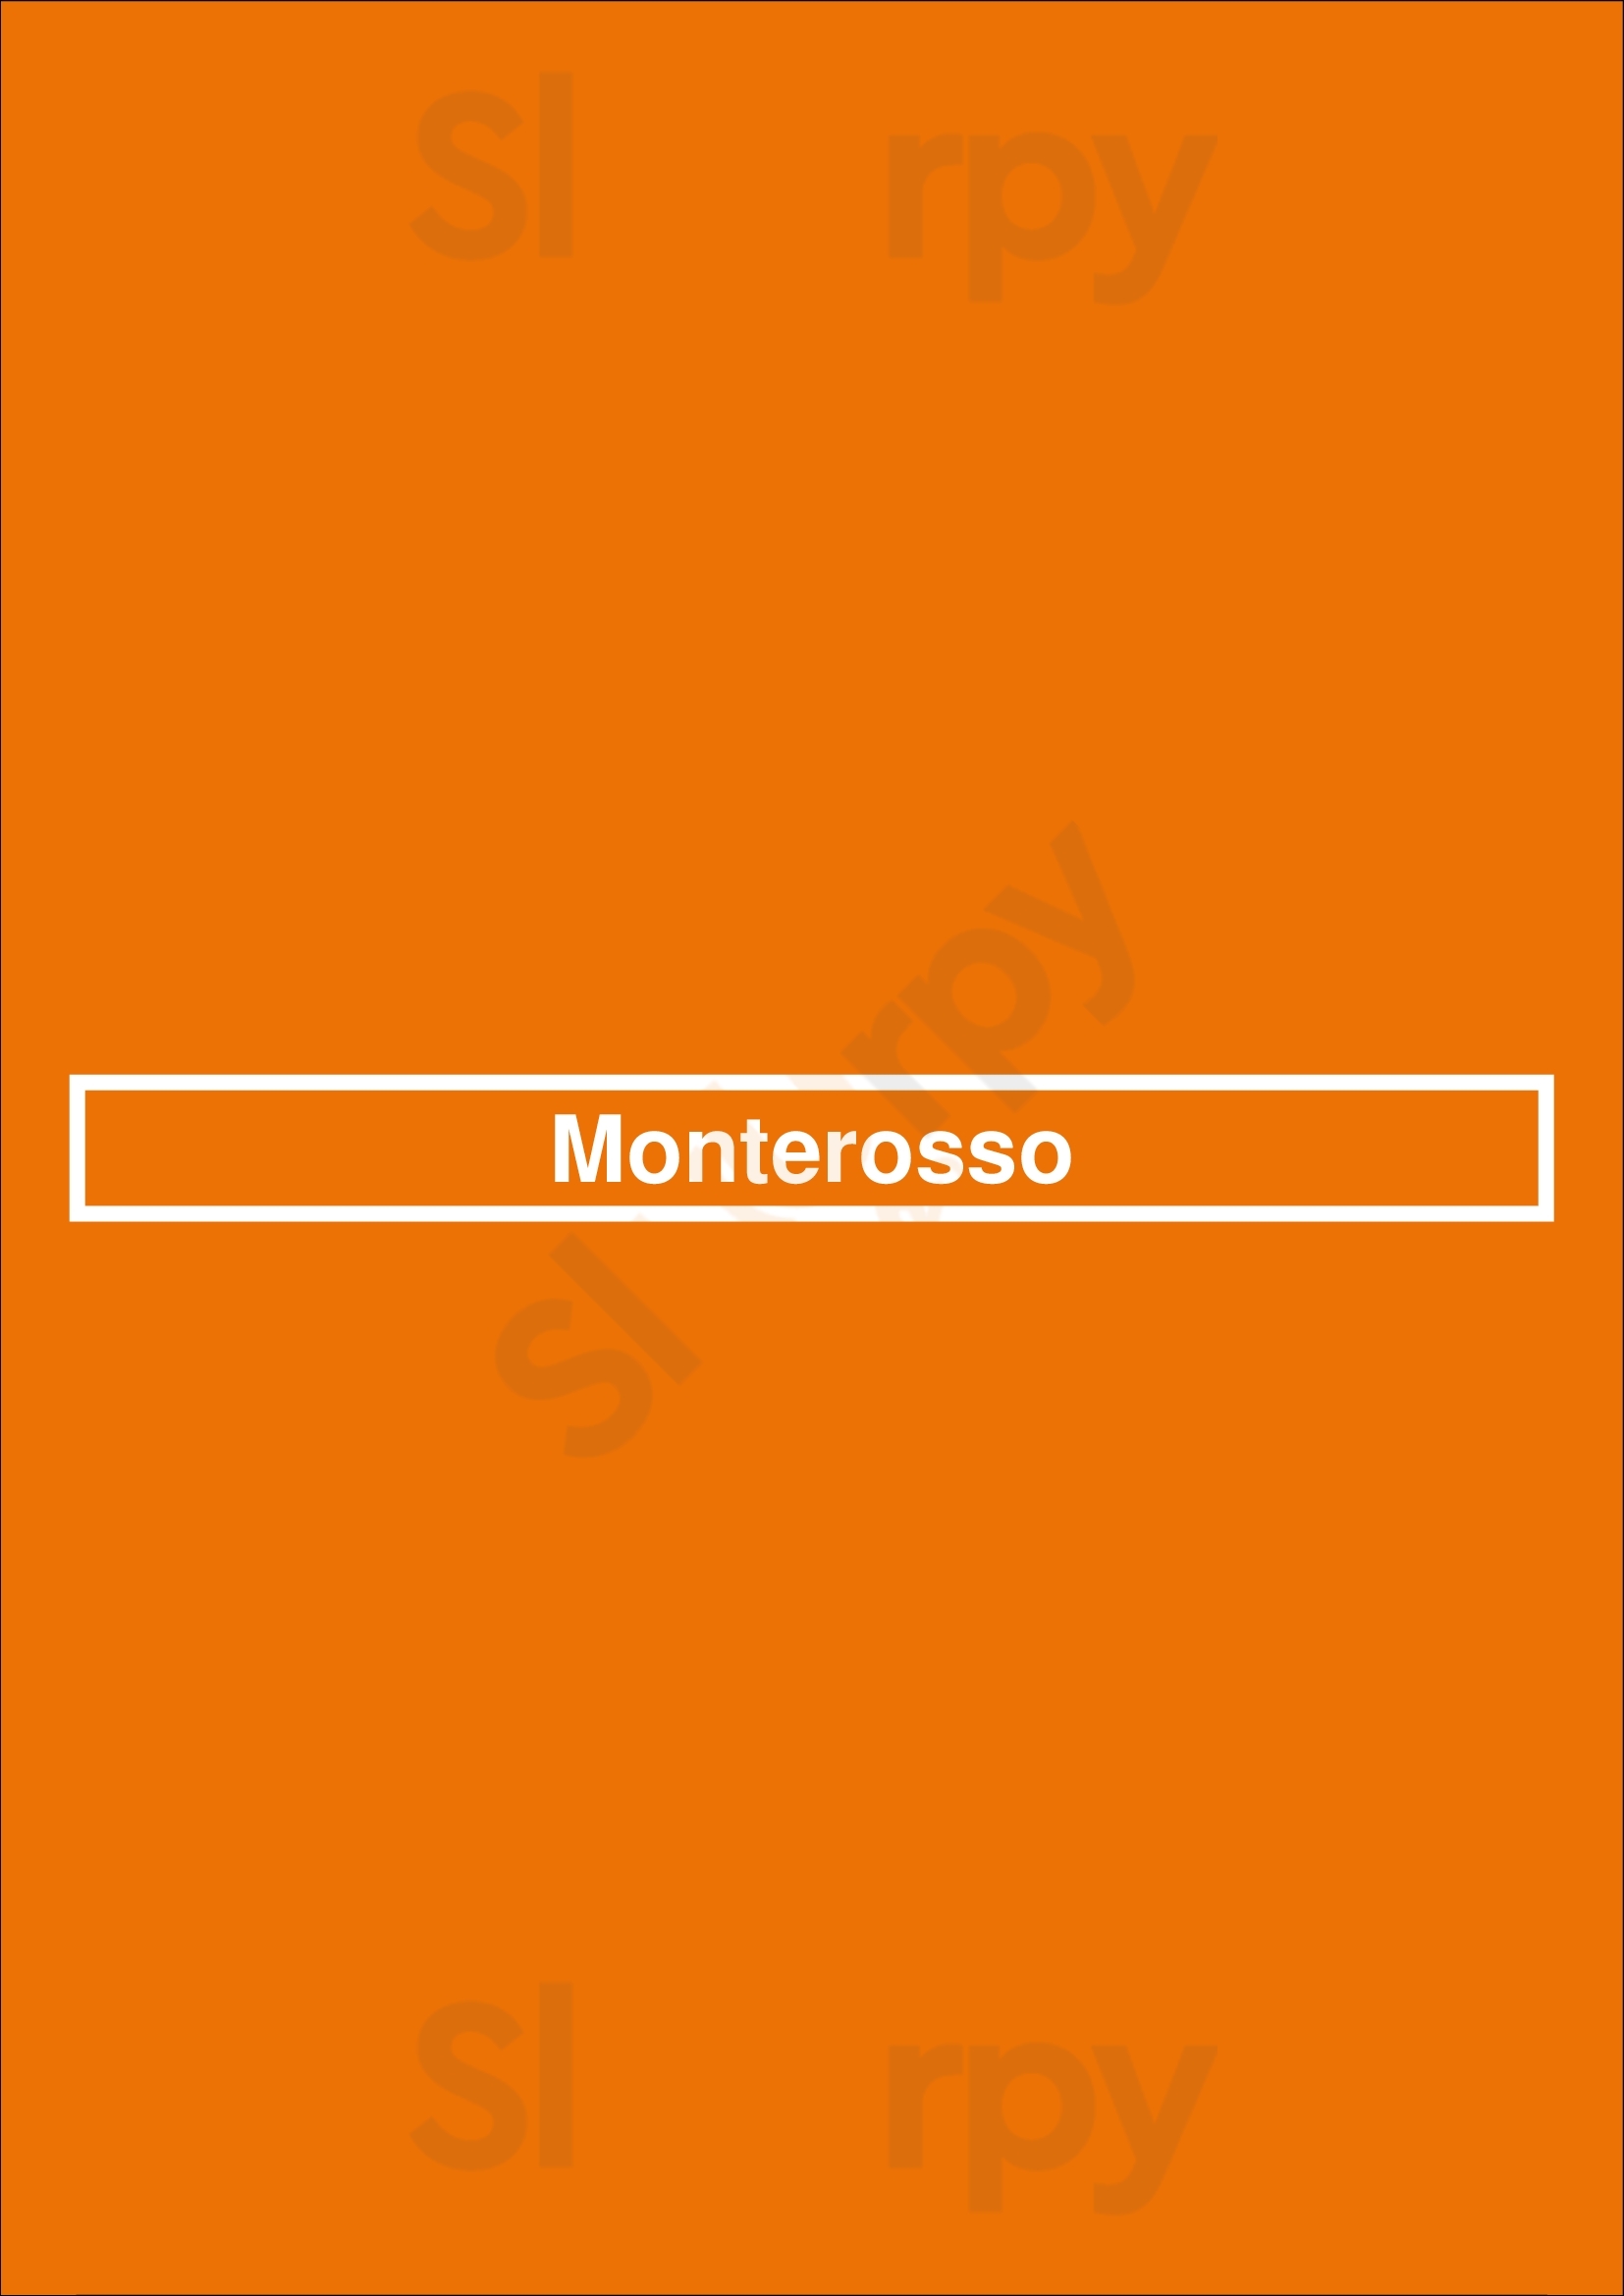 Monterosso Zeist Menu - 1